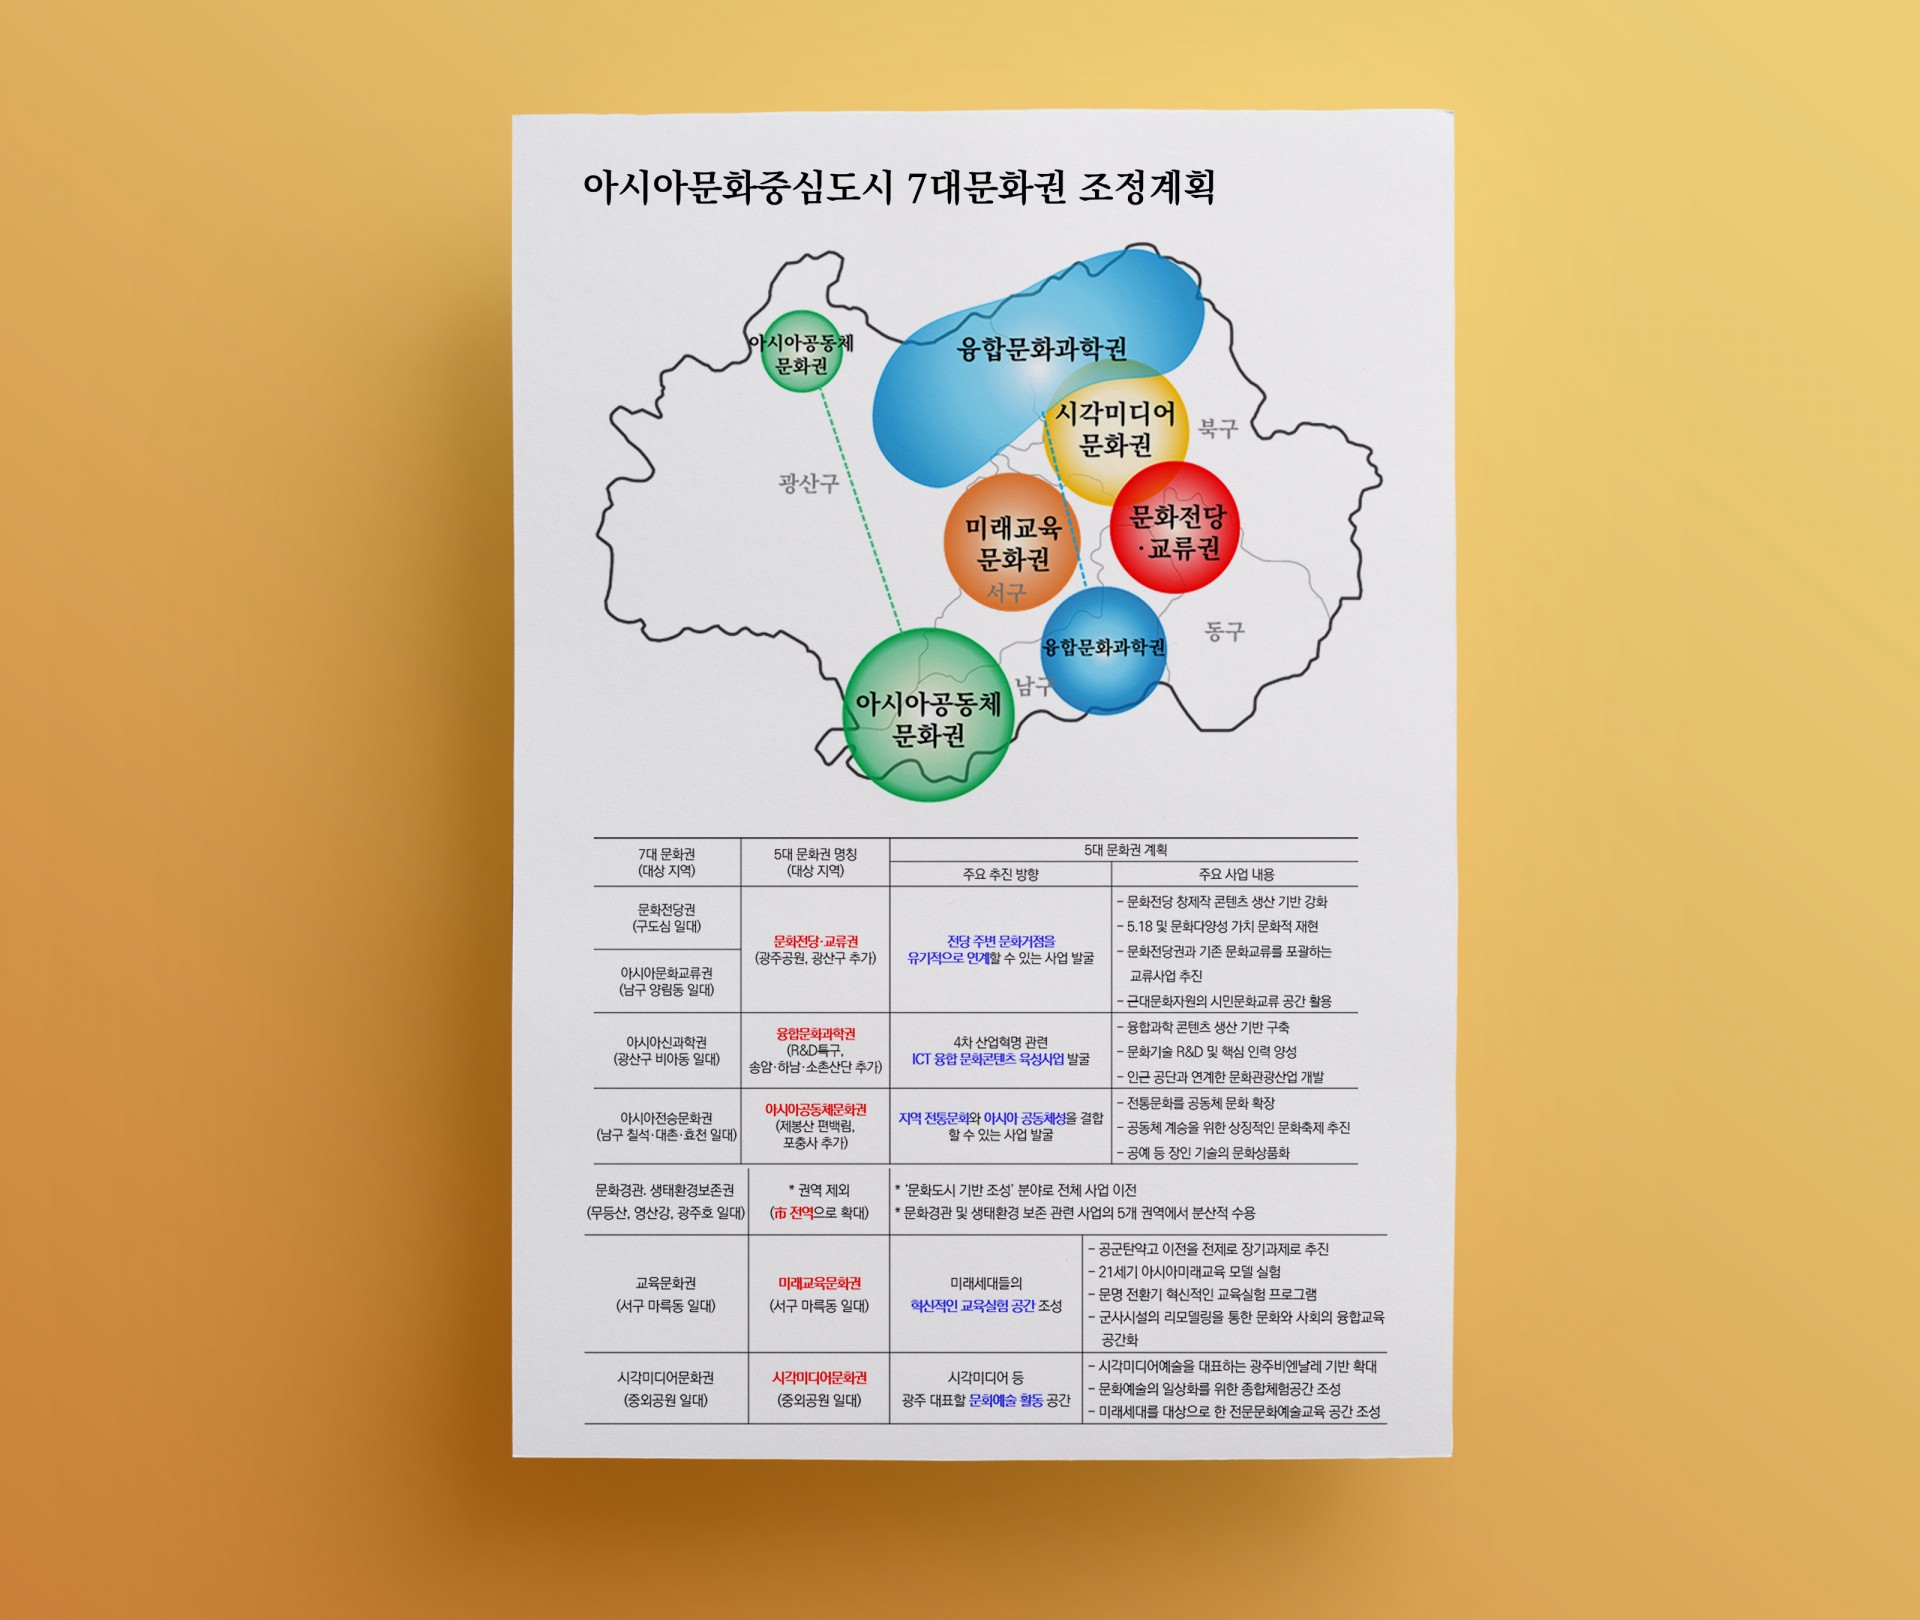 문화정책)아시아문화중심도시-7대문화권-조정계획(웹).jpg